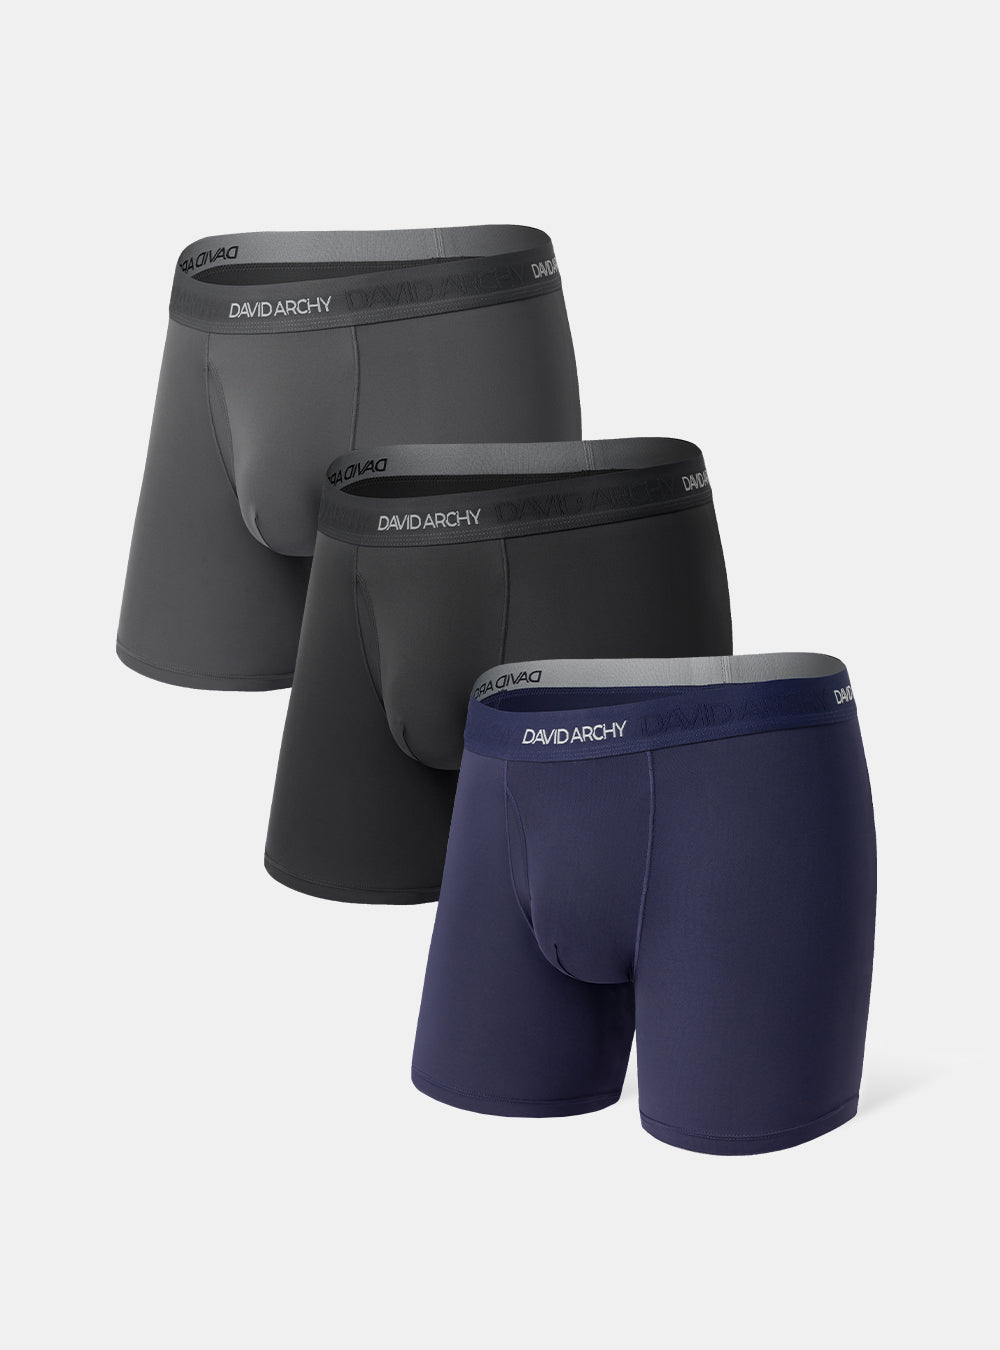 Buy DAVID ARCHY Mens Underwear Mesh Quick Dry Polyamide Boxer Briefs Active  Sports Soft Breathable Underwear in 3 Pack Online at desertcartKUWAIT